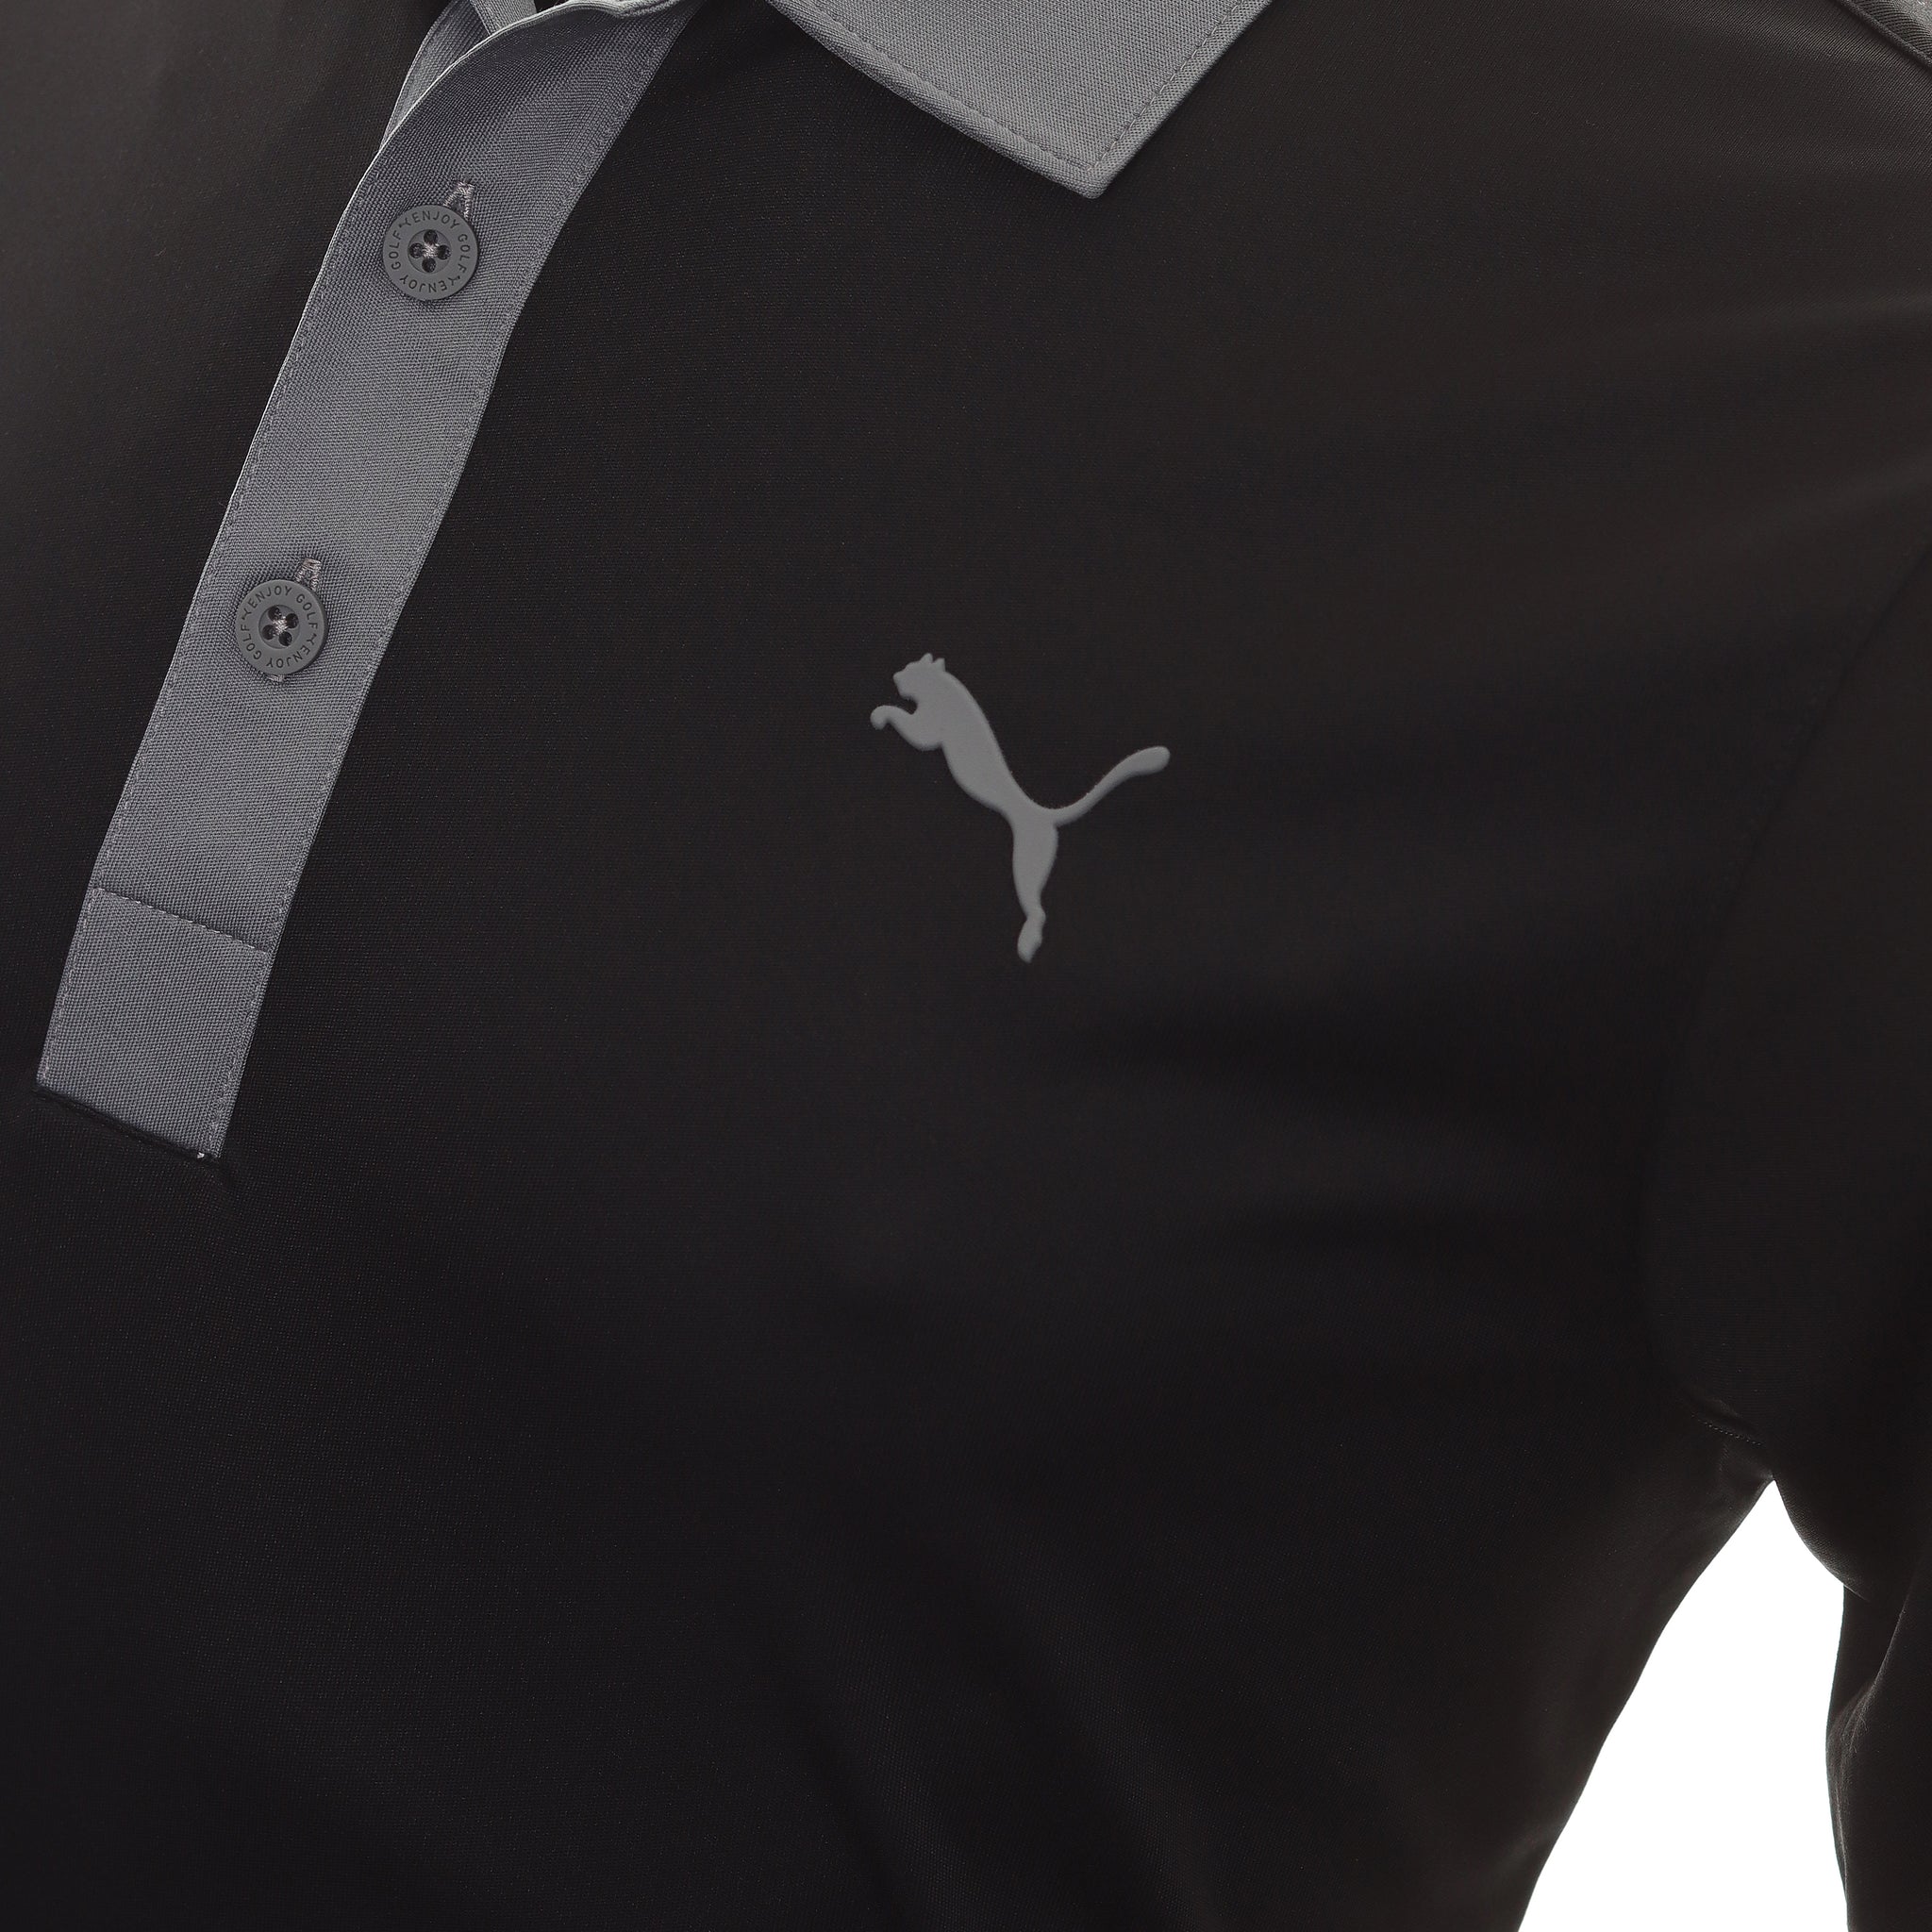 puma-golf-gamer-polo-shirt-599118-puma-black-quiet-shade-02